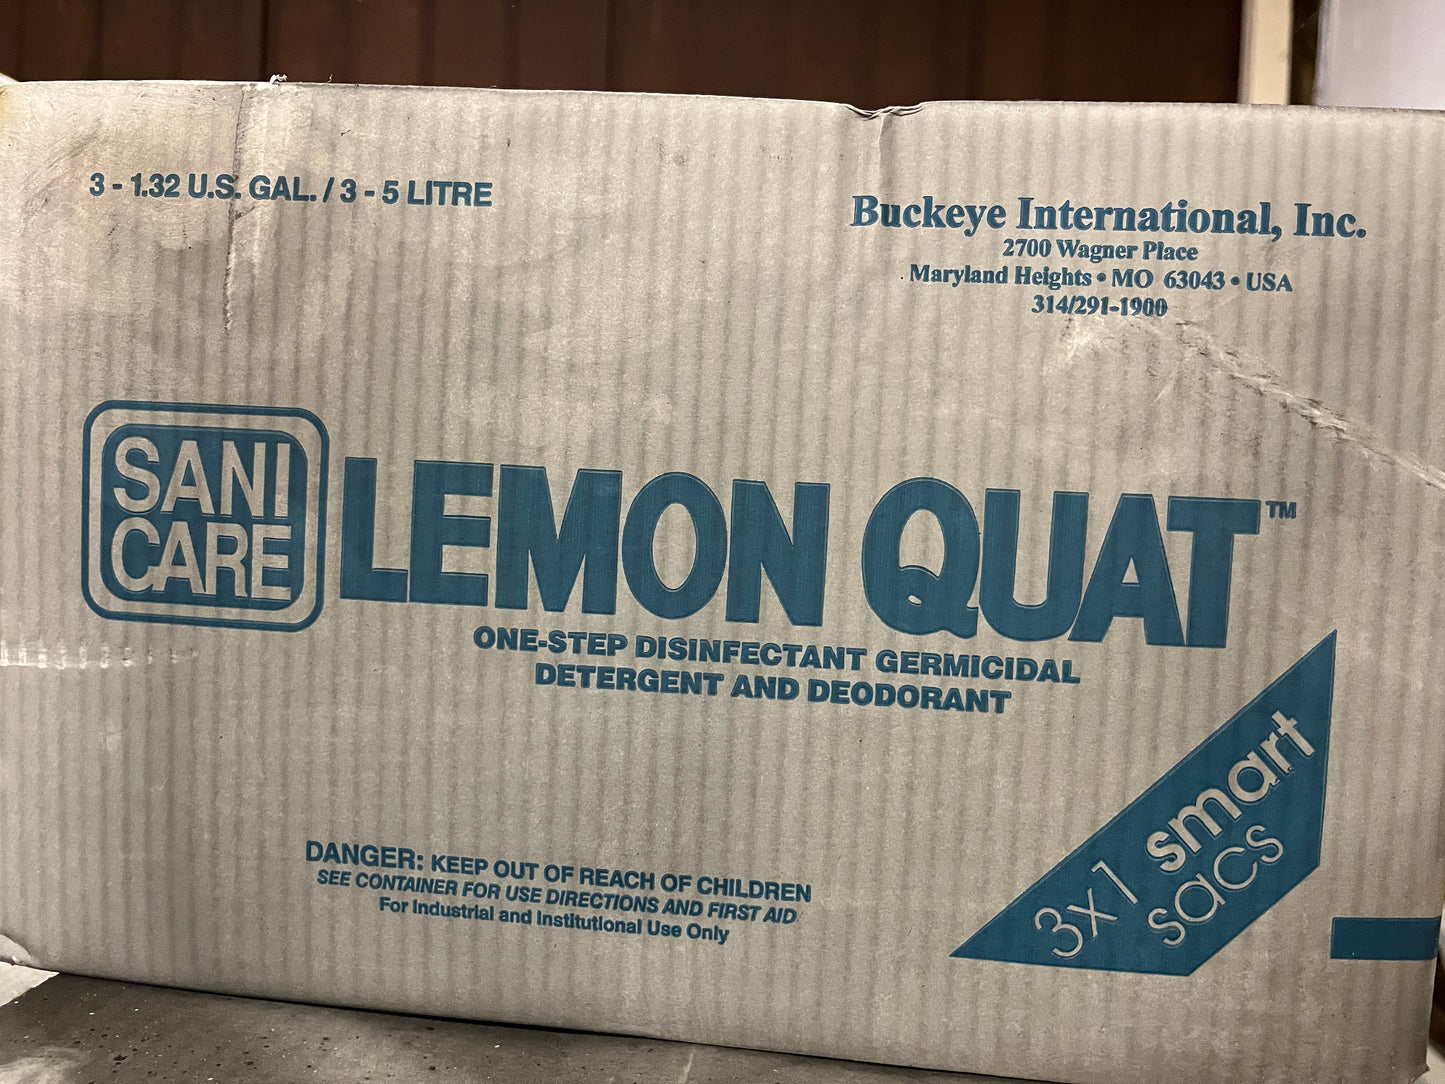 Sanicare Lemon Quat™ Disinfectant Cleaners - 3 Sacs